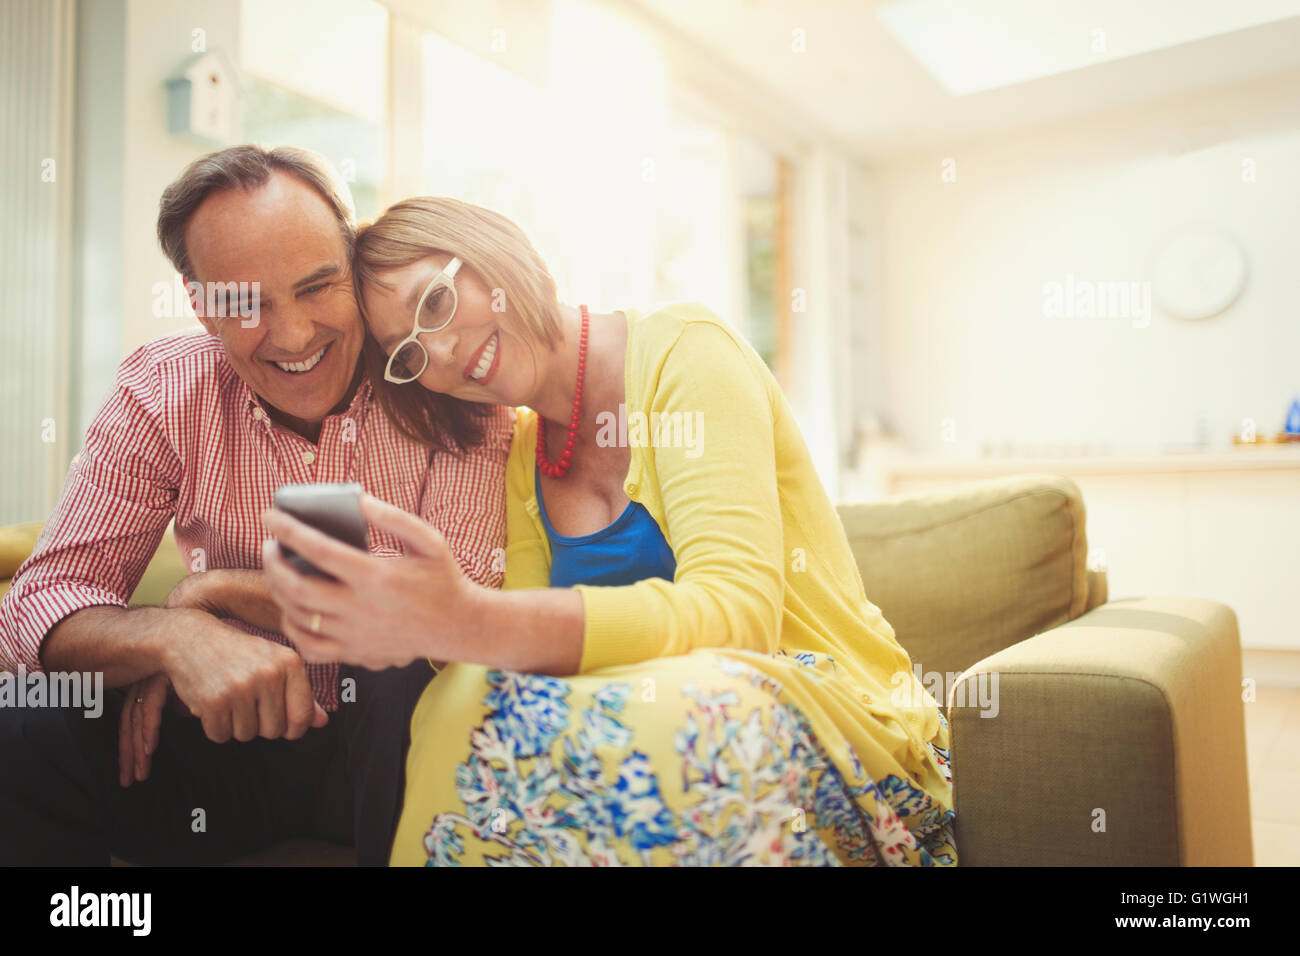 Lächelnd älteres paar SMS mit Handy im Wohnzimmer Stockfoto